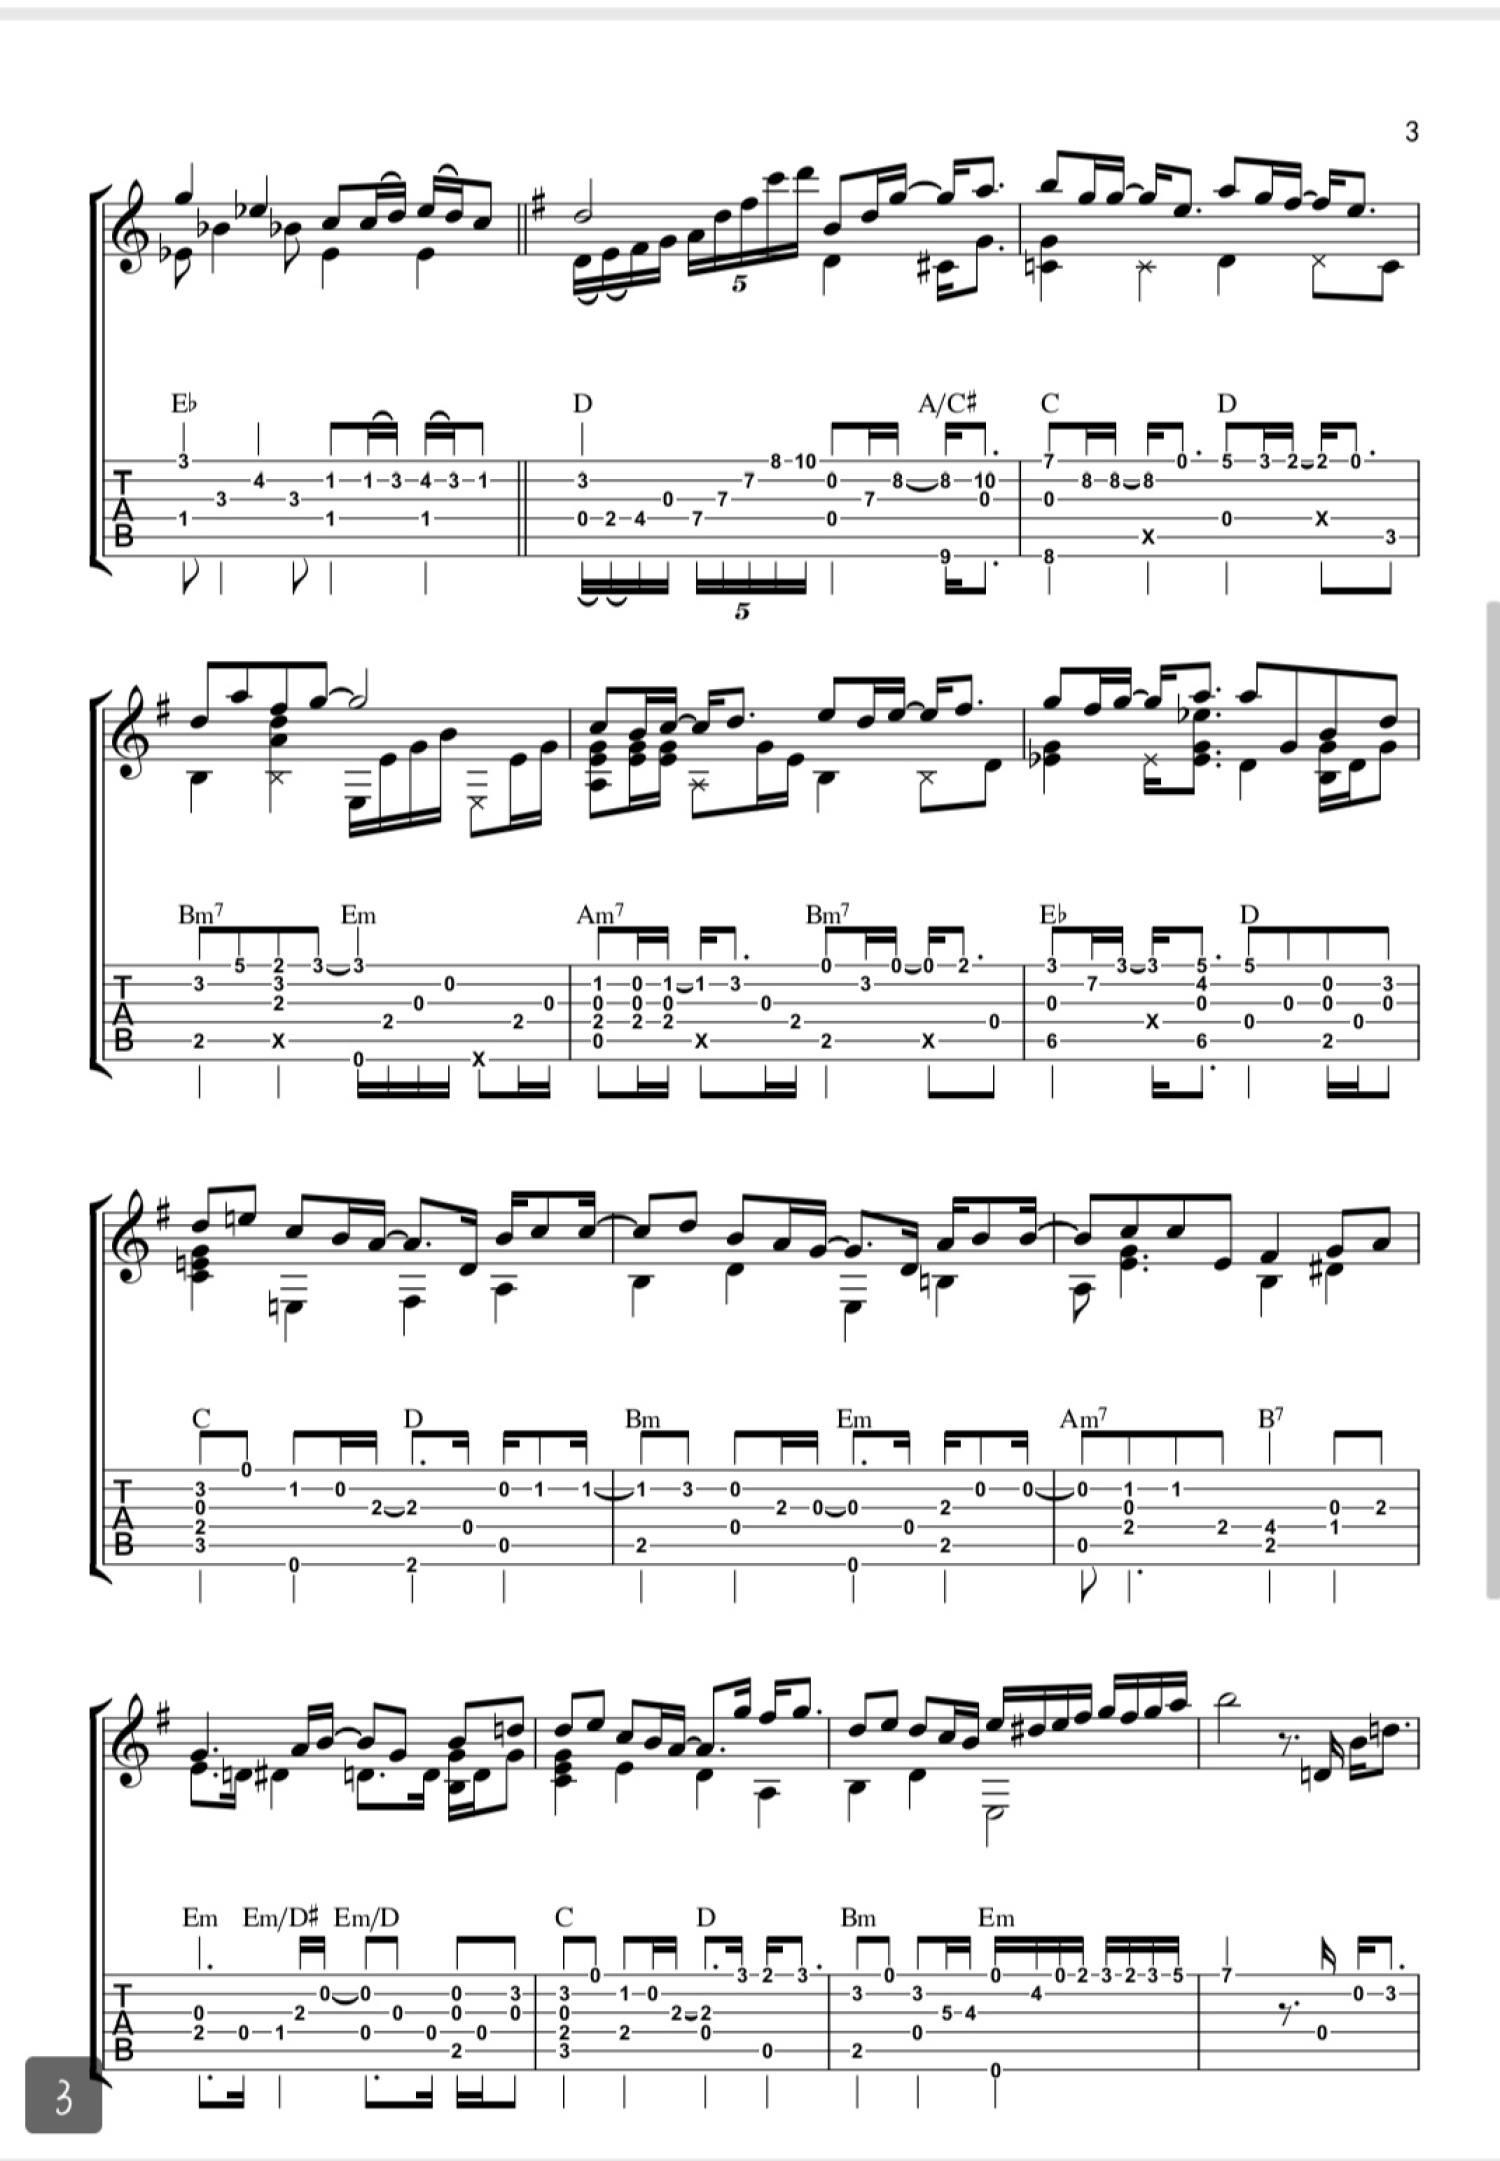 我不願讓你一個人-簡單完整版-五月天-鋼琴譜檔(五線譜、雙手簡譜、數位譜、Midi、PDF)免費下載